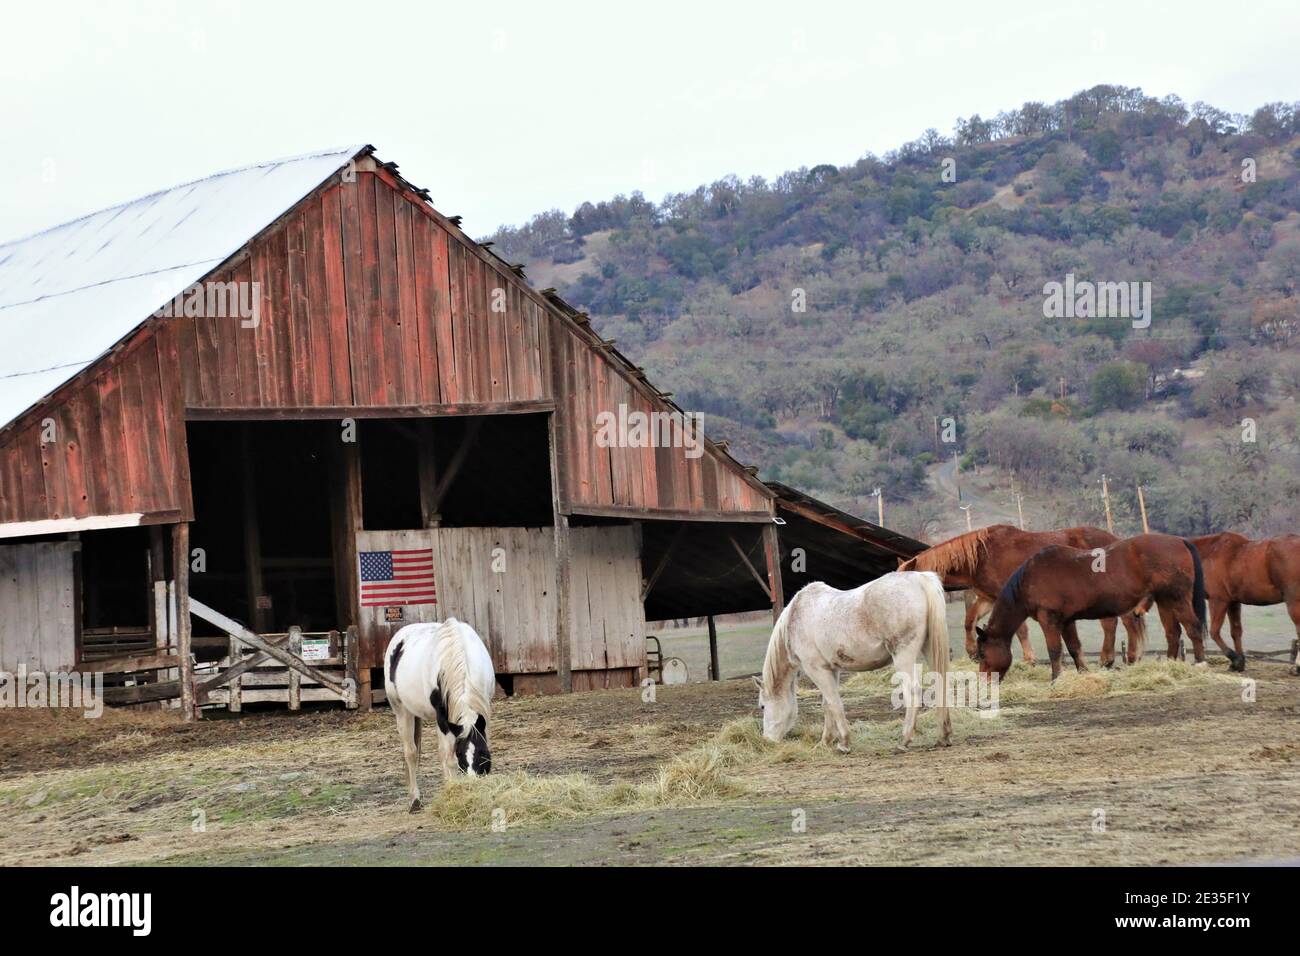 Pferde essen am Abend in der Nähe von Lakeport auf Clearlake, Kalifornien mit amerikanischer Flagge auf der alten Scheune im hinteren Teil Stockfoto